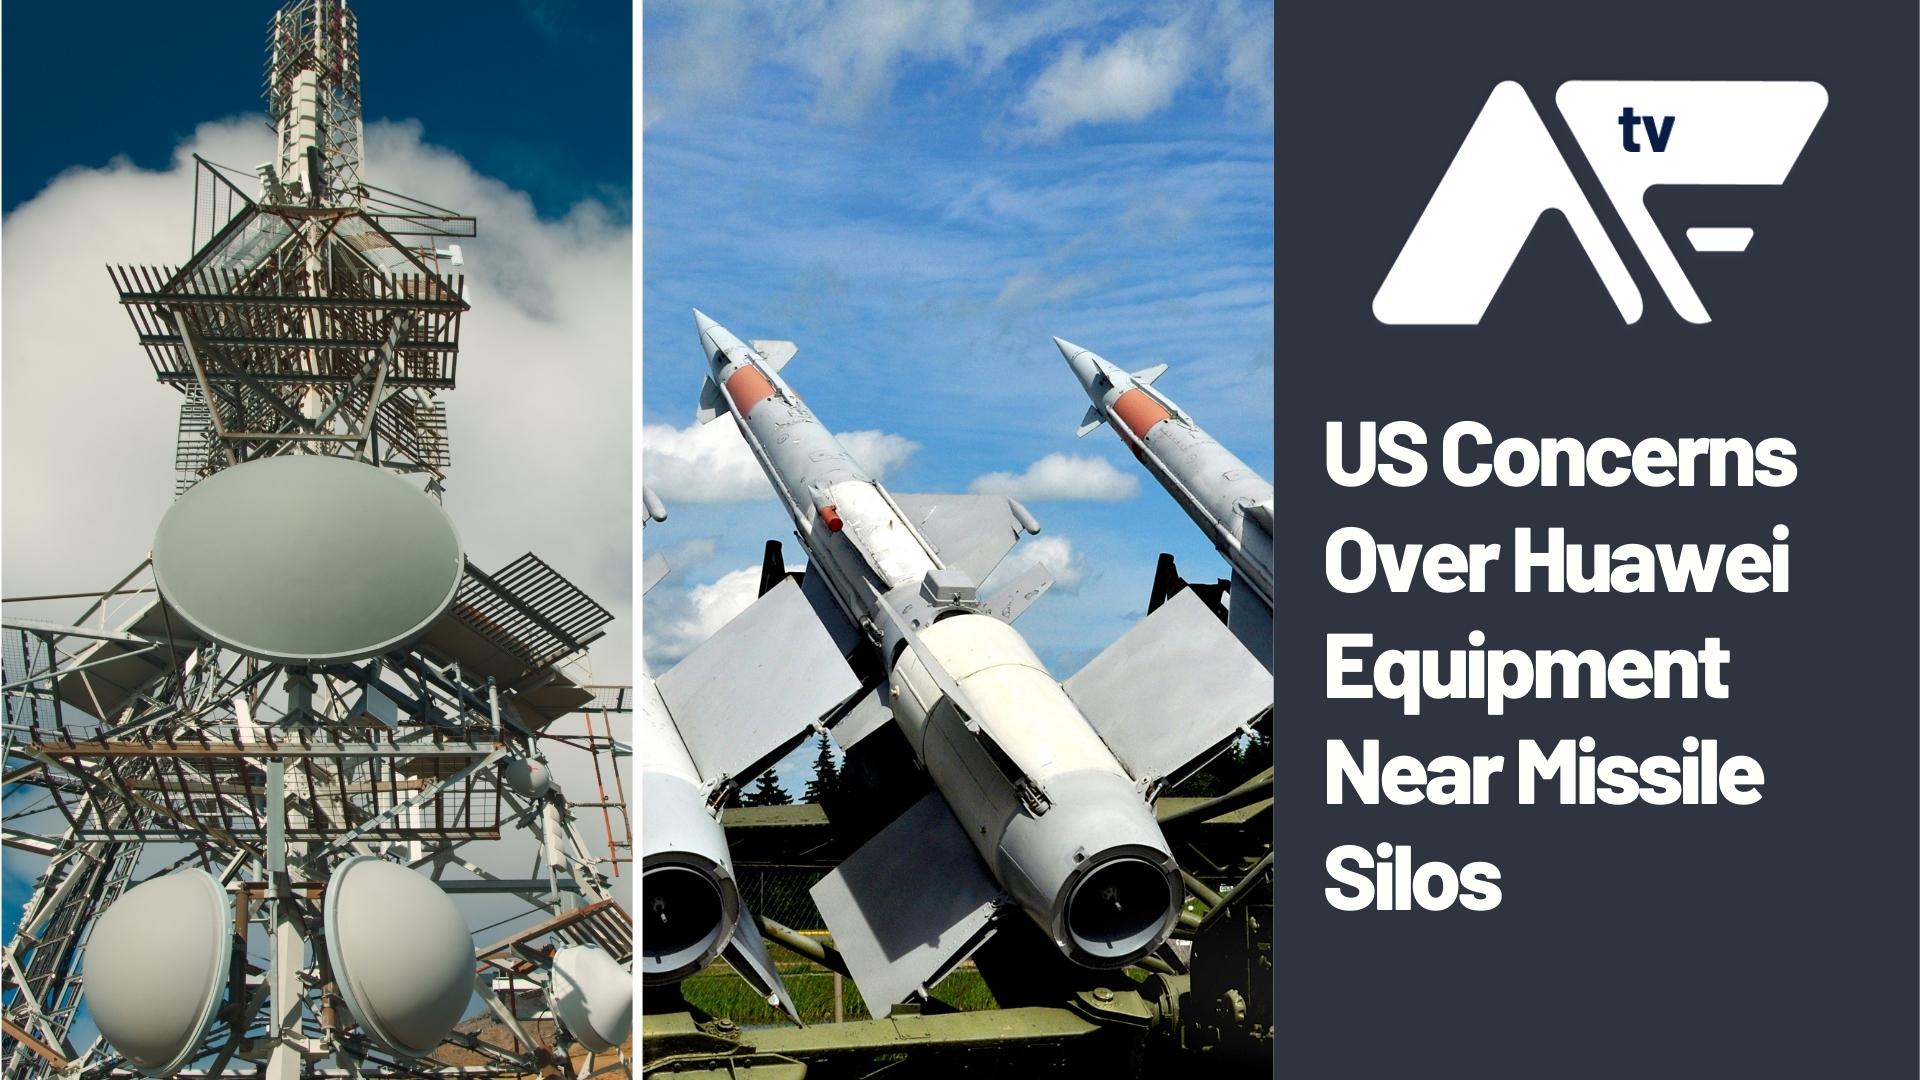 AF TV – US Concerns Over Huawei Equipment Near Missile Silos